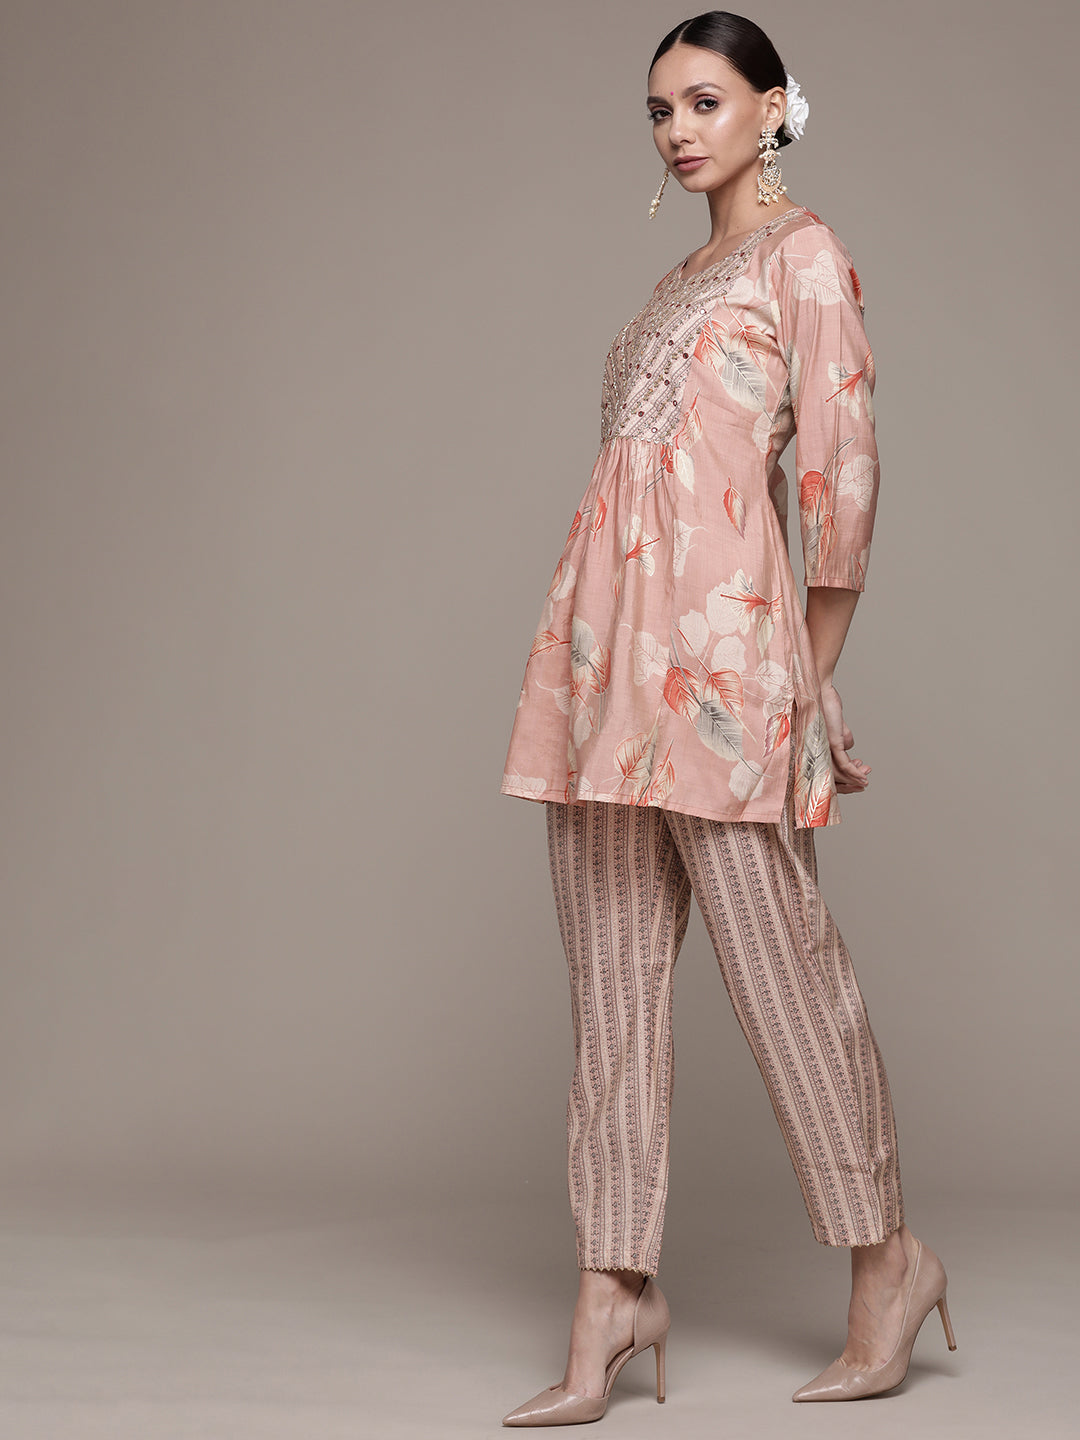 Ishin Women's Silk Blend Peach Embroidered A-Line Kurti Trouser Set